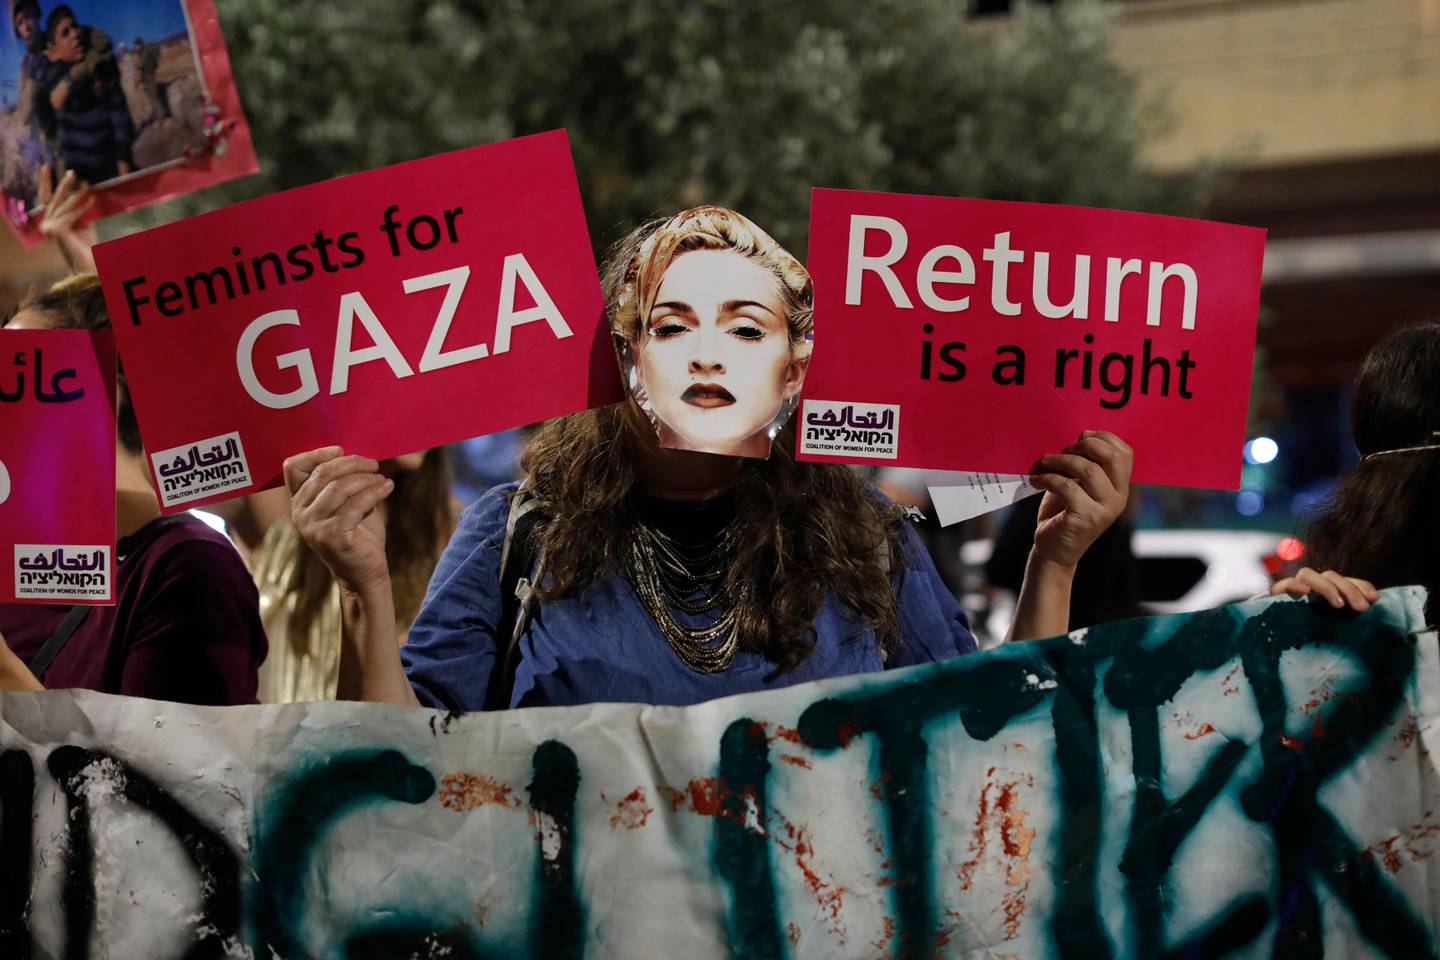 Da Eurovision skulle avholdes i Israel i 2019, var det mange aktivister, artister og samfunnsdebattanter som oppfordret til boikott. Den verdenskjente Madonna opptrådde i pausen på et Eurovision-arrangement, og fikk kritikk av flere for å delta. To av danserne hennes bar et palestinsk og israelsk flagg på ryggen under showet.